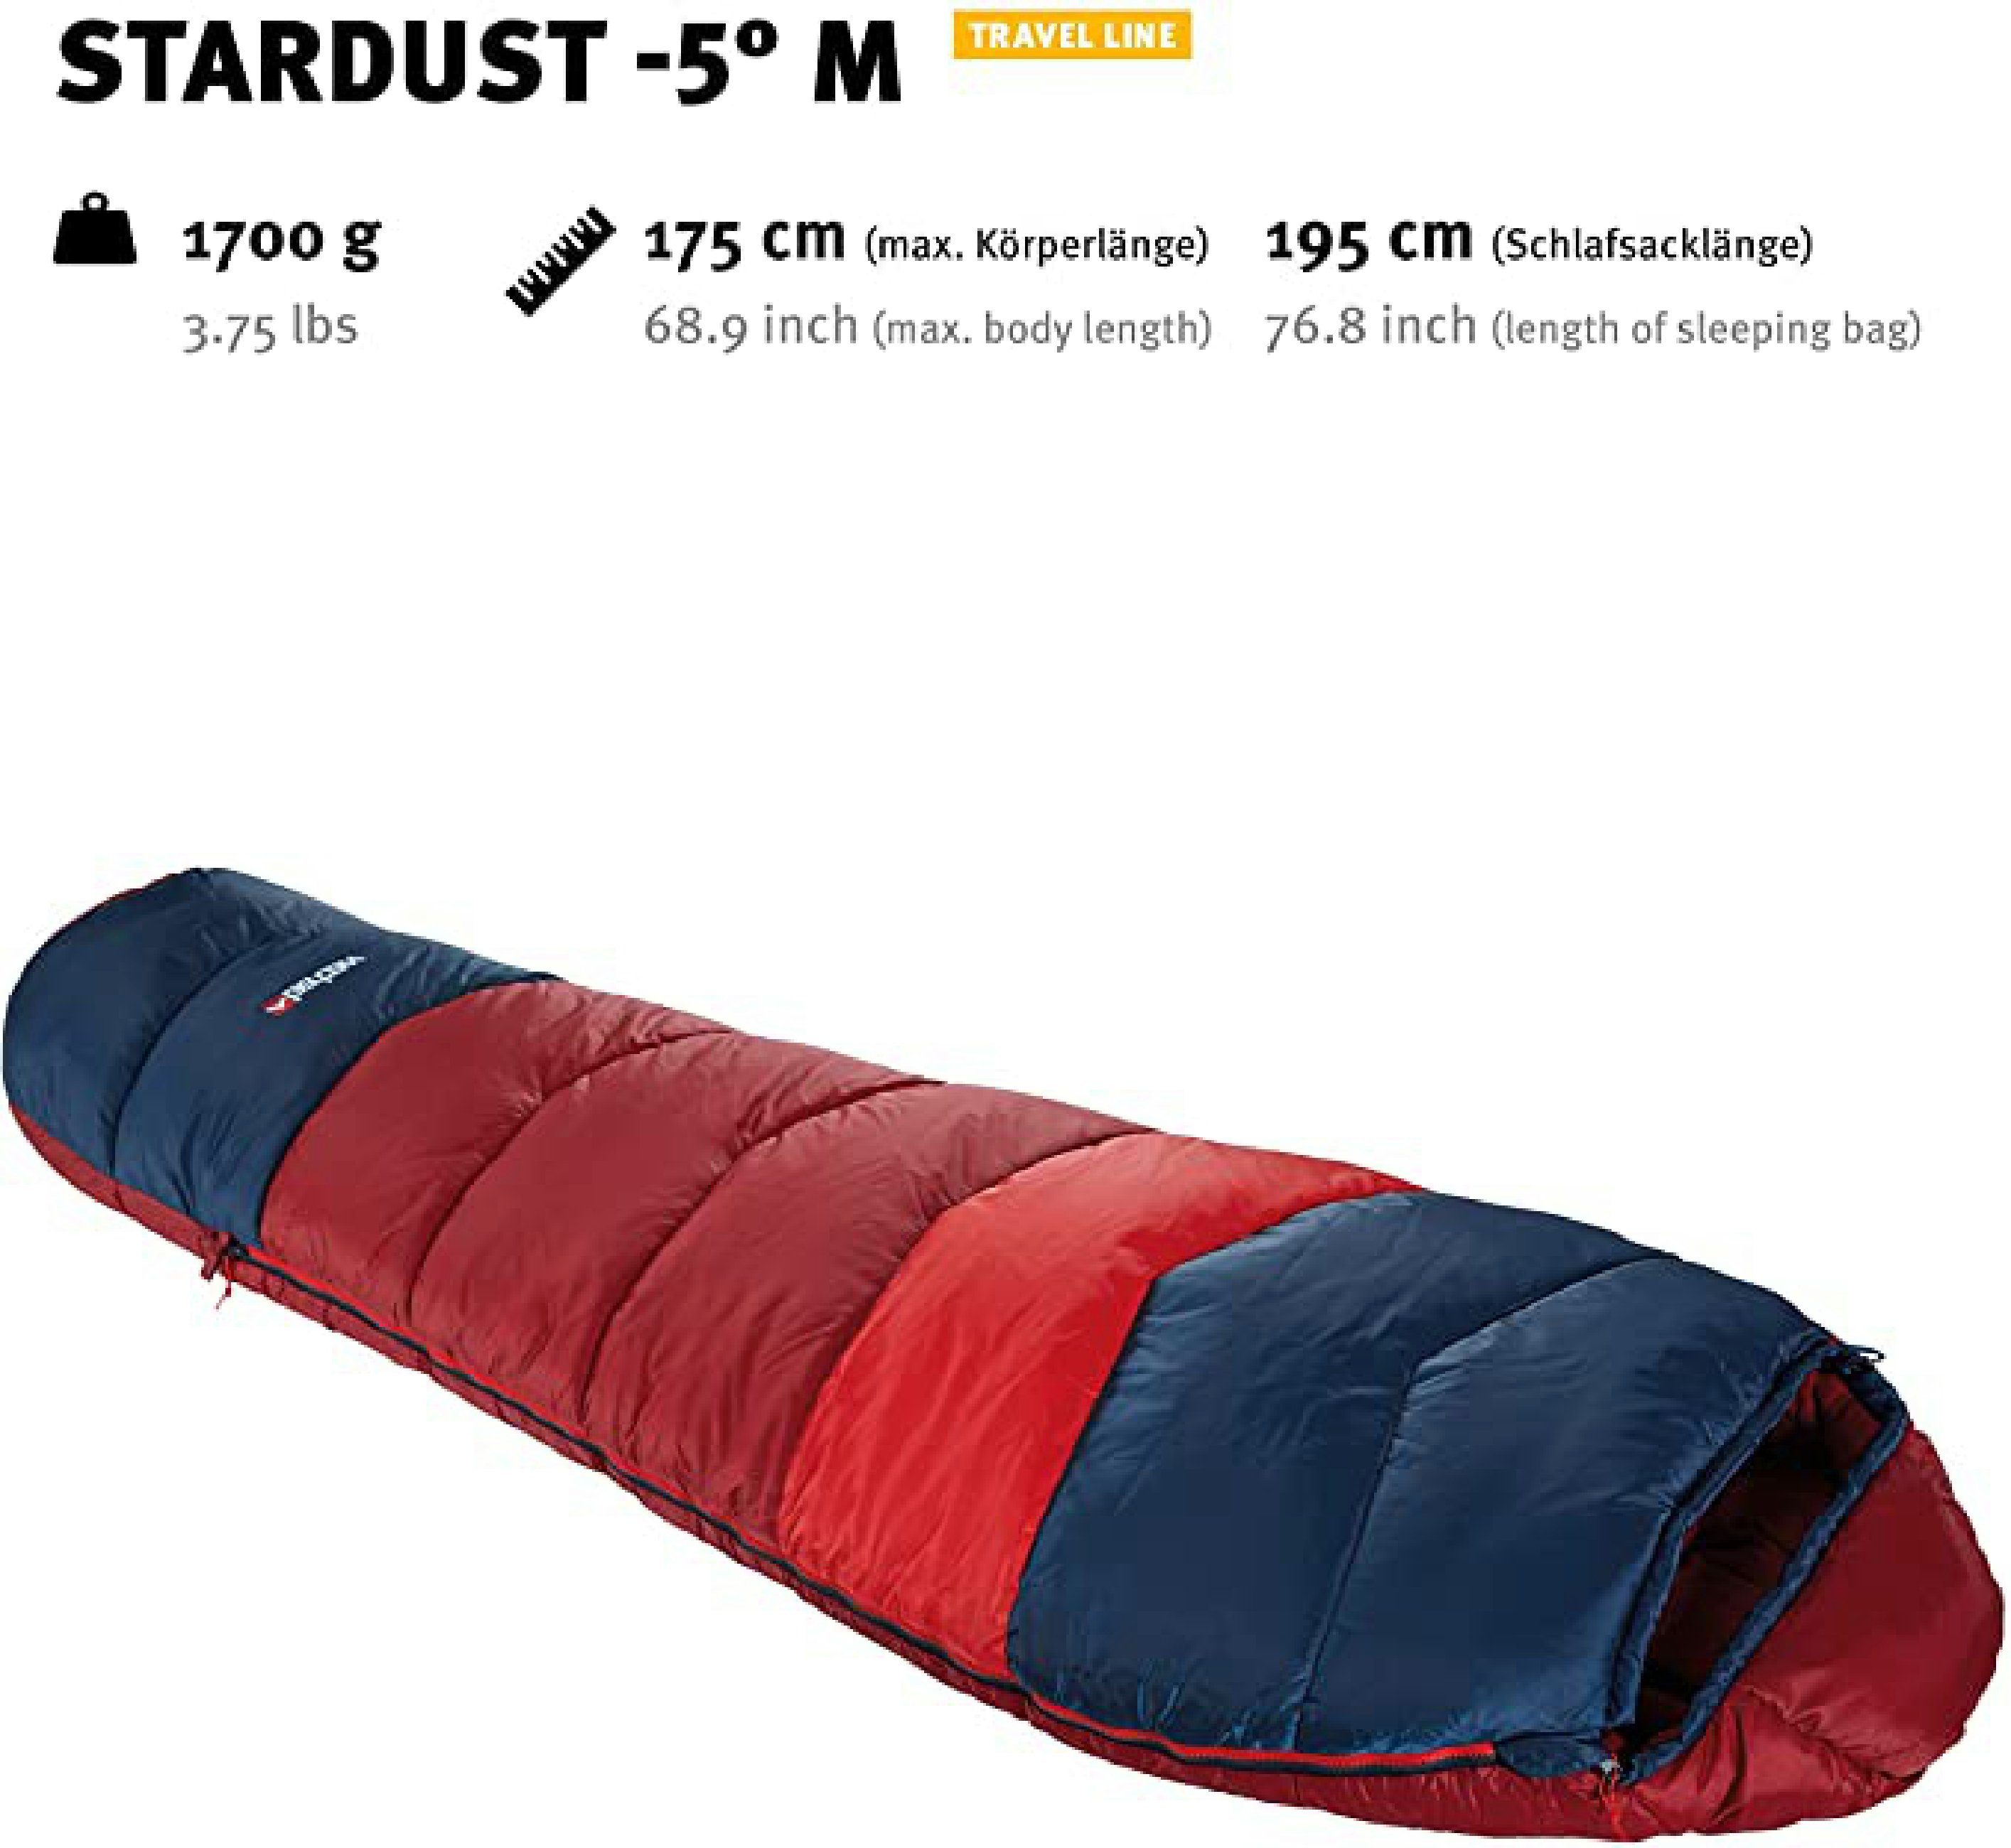 Mumienschlafsack Jahreszeiten, eingenähte Wärmekragen, verstellbarer Wechsel Innentasche Tents Stardust 3-4 -5° Outdoor